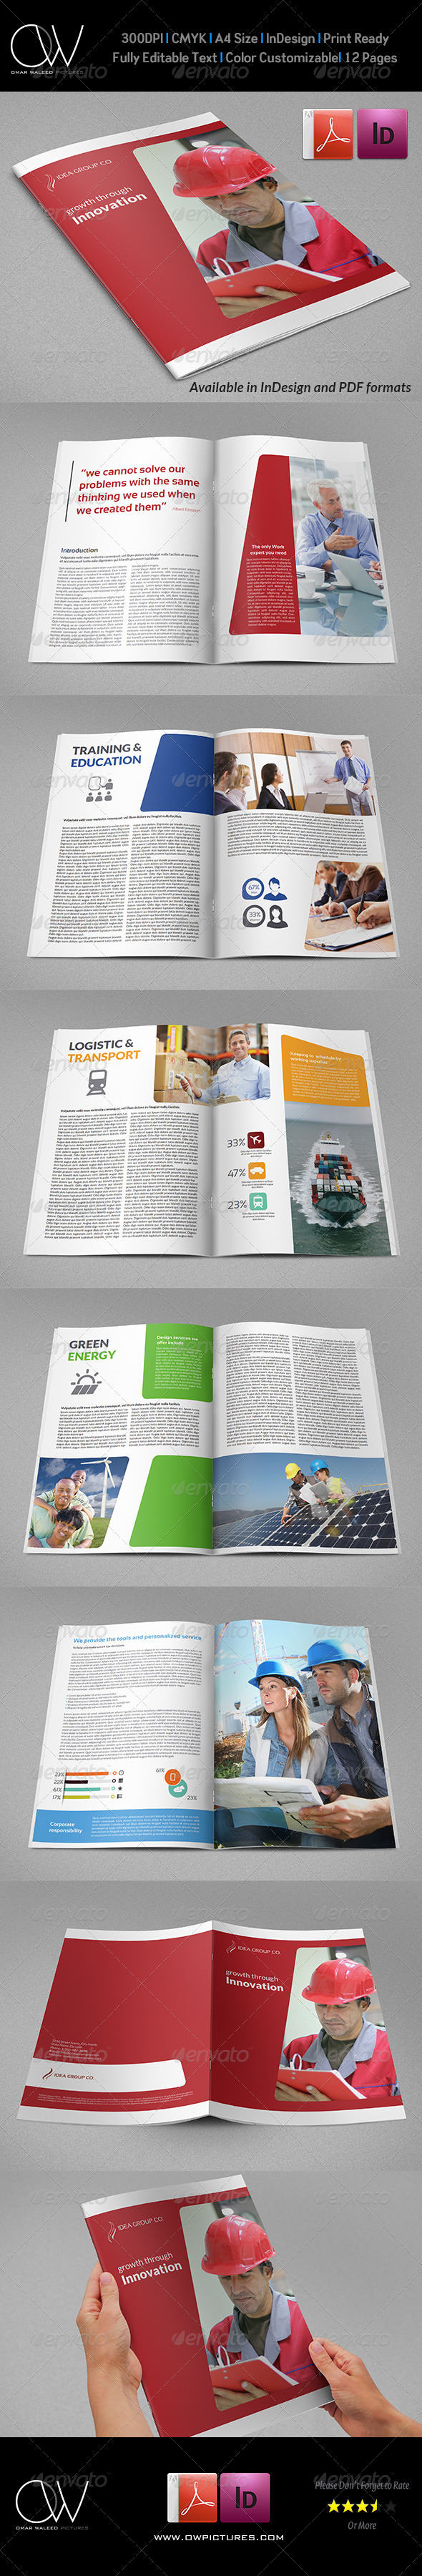 GraphicRiver Company Brochure Template Vol.36 7651970